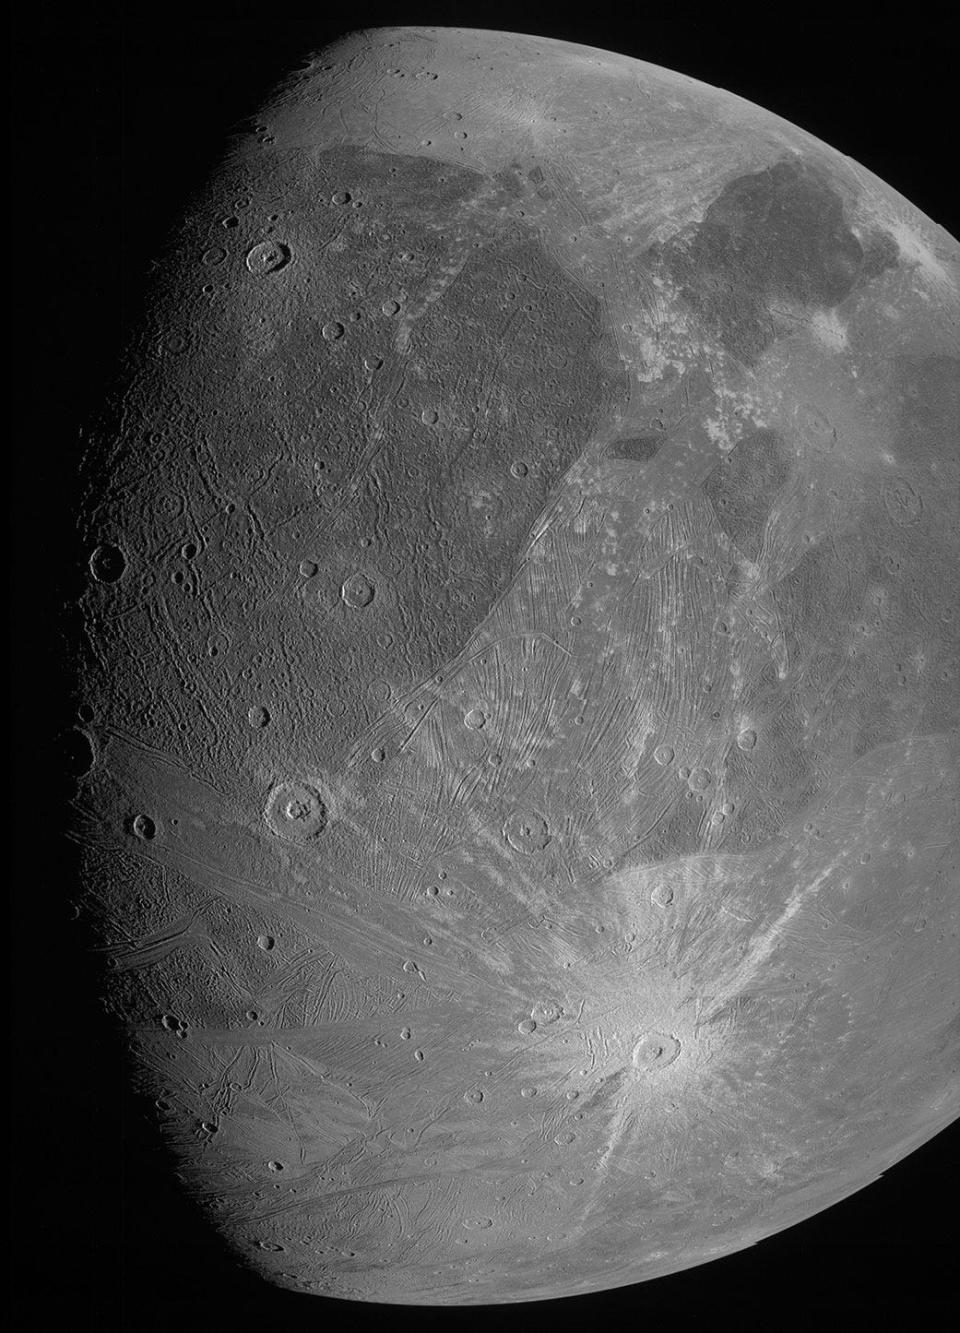 ganymede jupiter moon juno photo close up